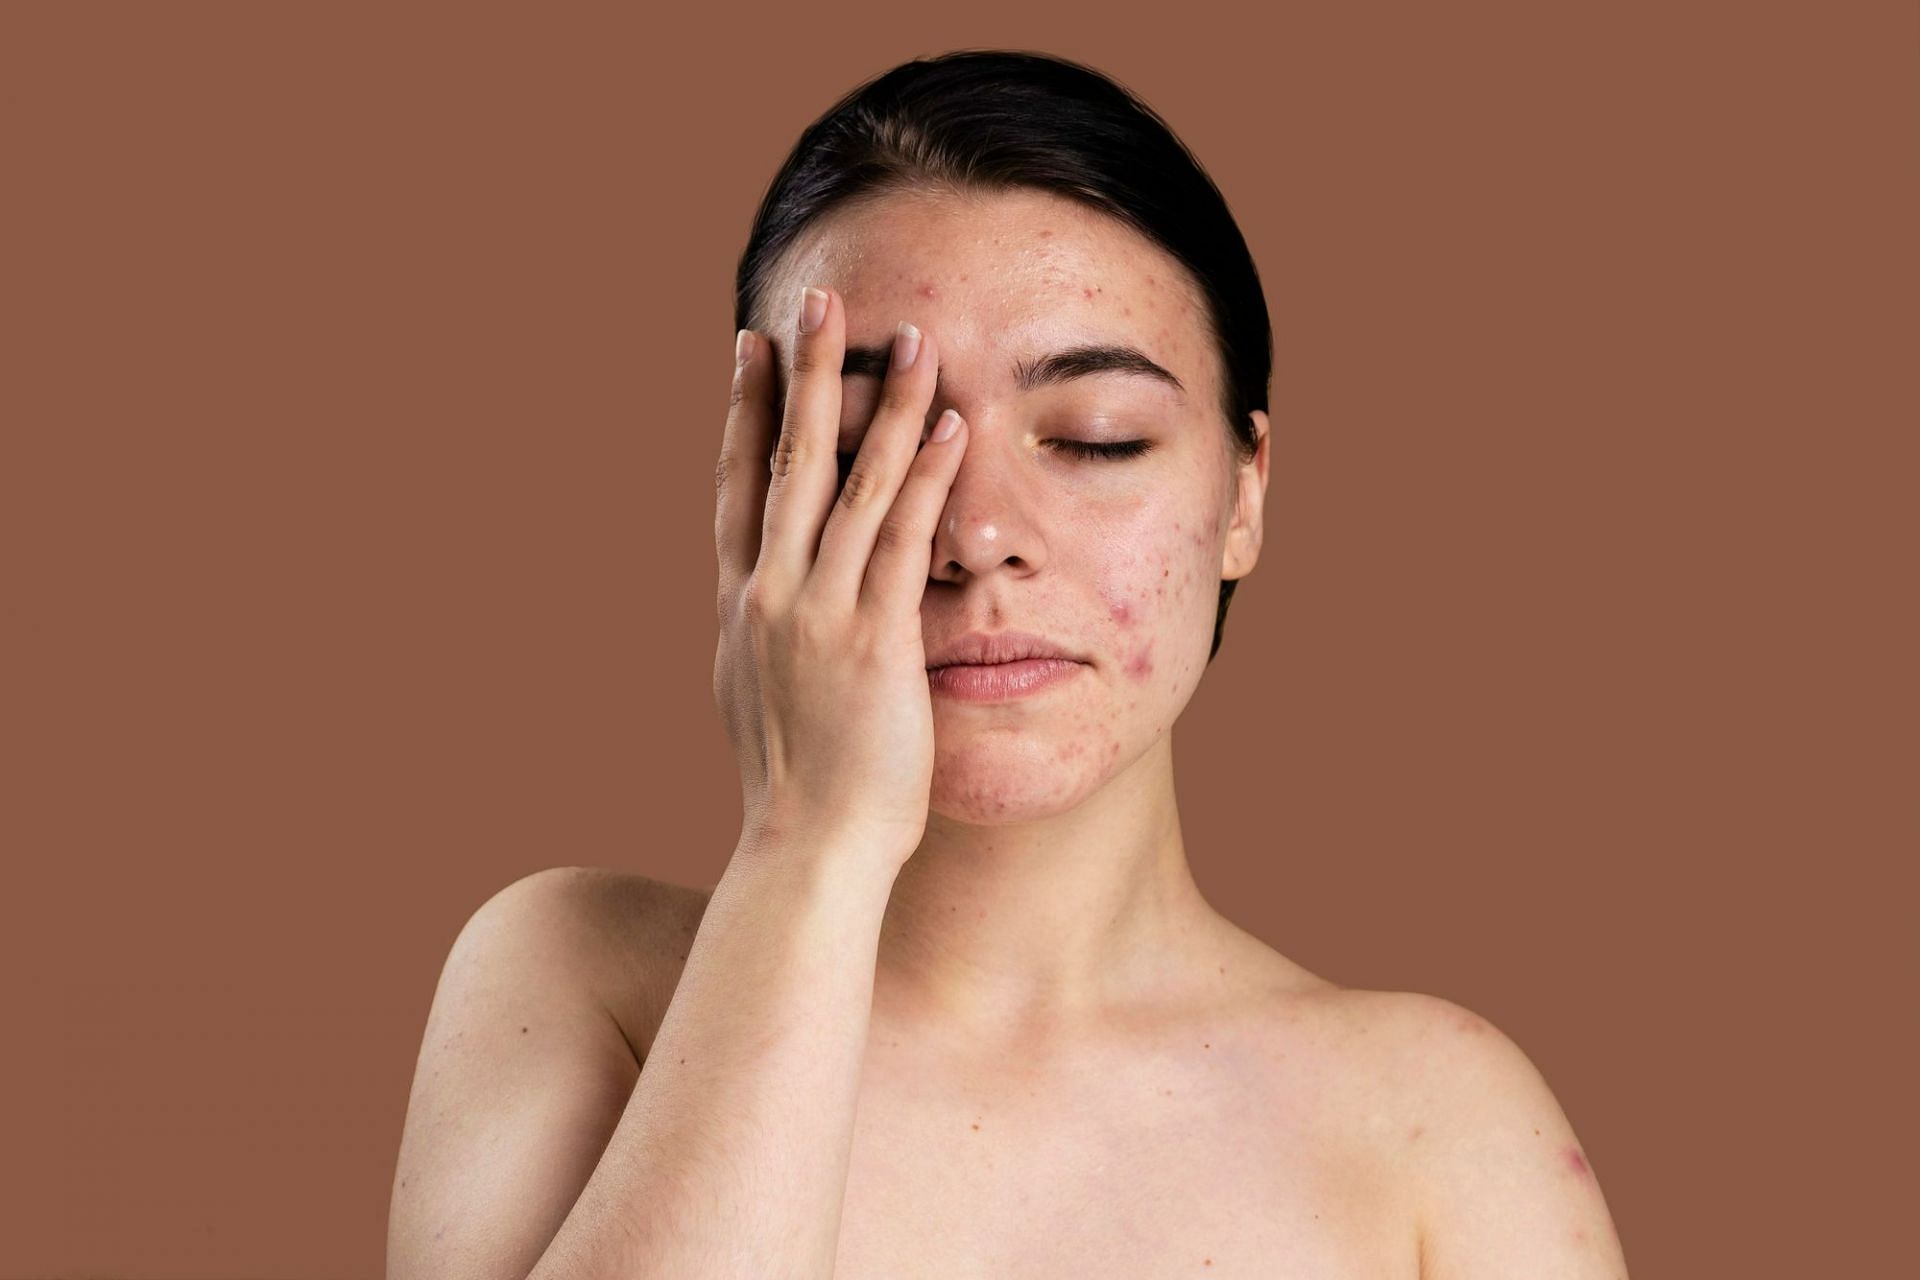 How often should I wash my face? (Image by Freepik on Freepik)